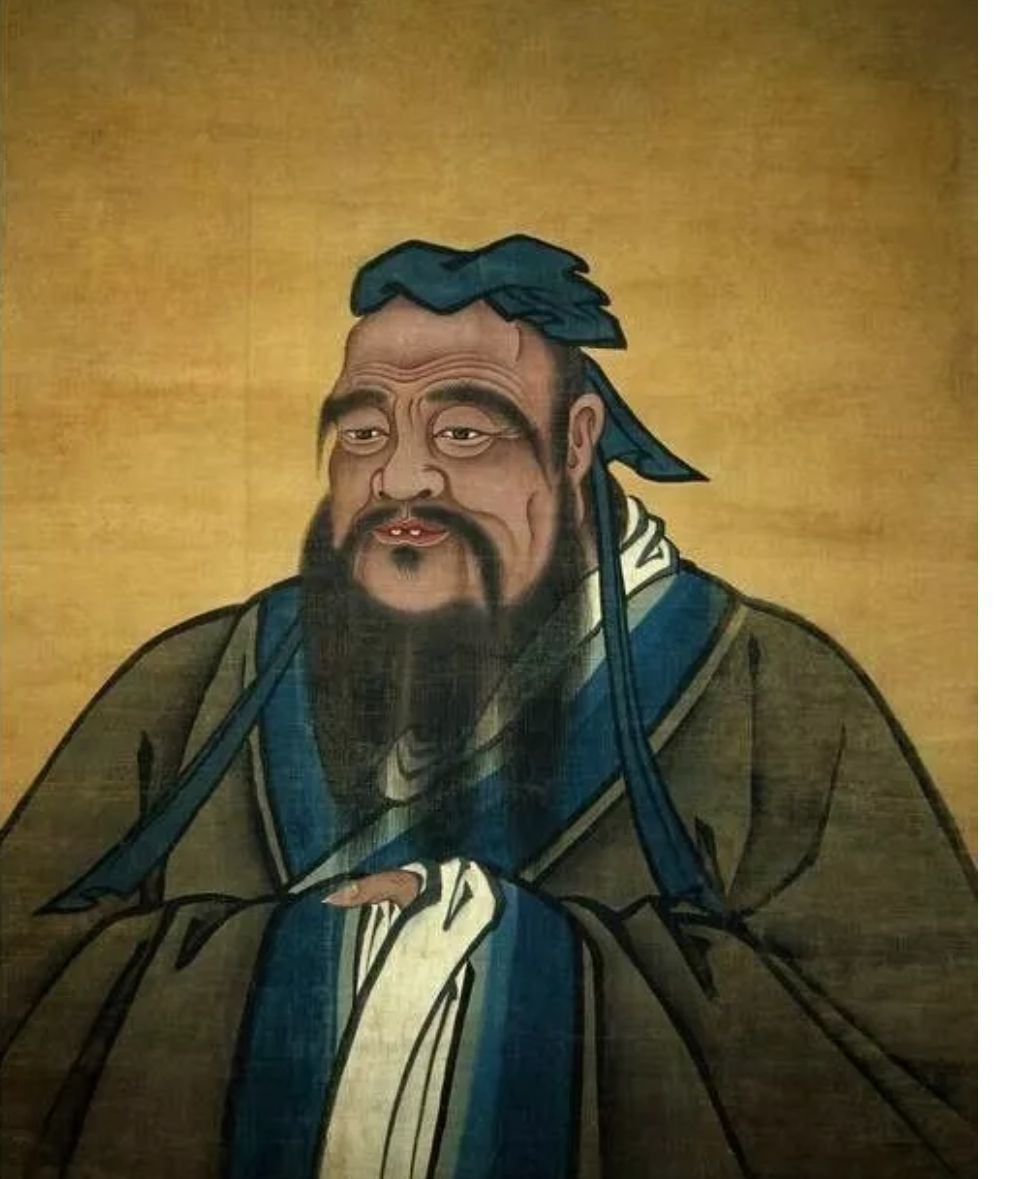 什么是儒家——儒家介绍儒家儒家学派的创始人